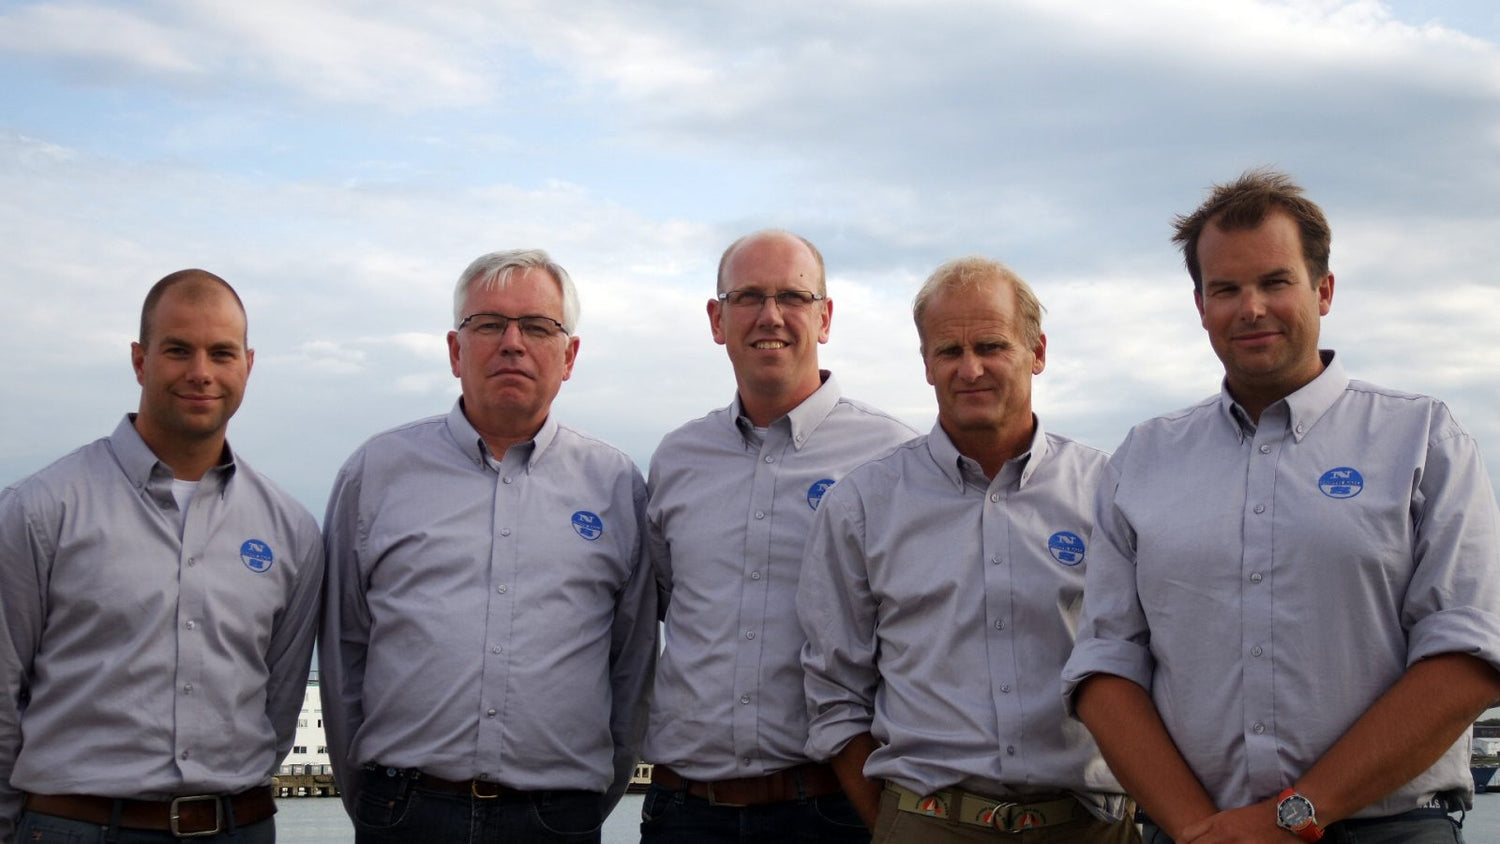 Nic Bol, Jacco Huijgen en Mark Meeuwisse naar North Sails Benelux